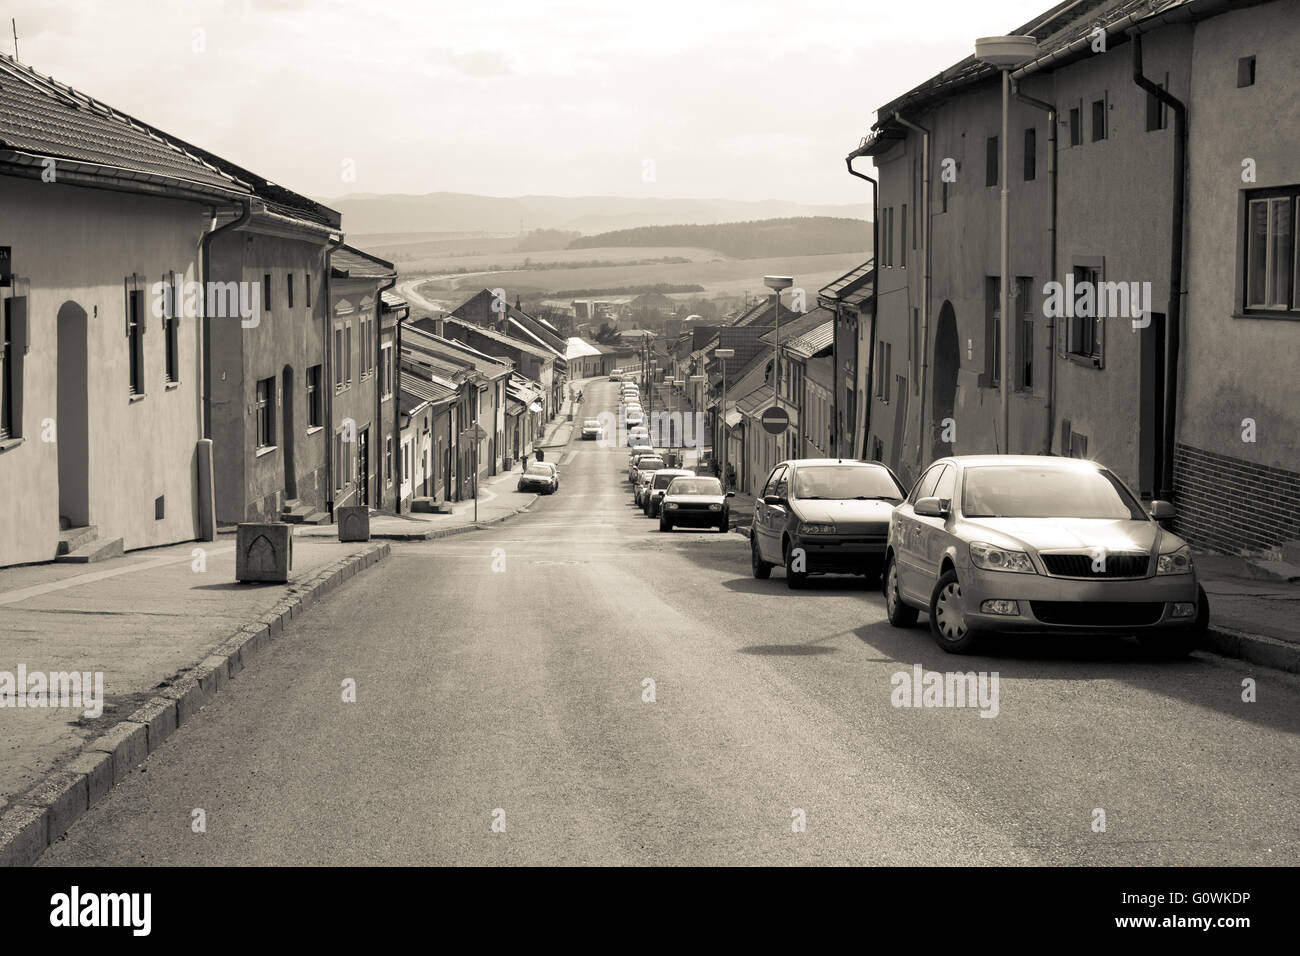 Retro car parked in old European city street Levoca Slovakia Stock Photo